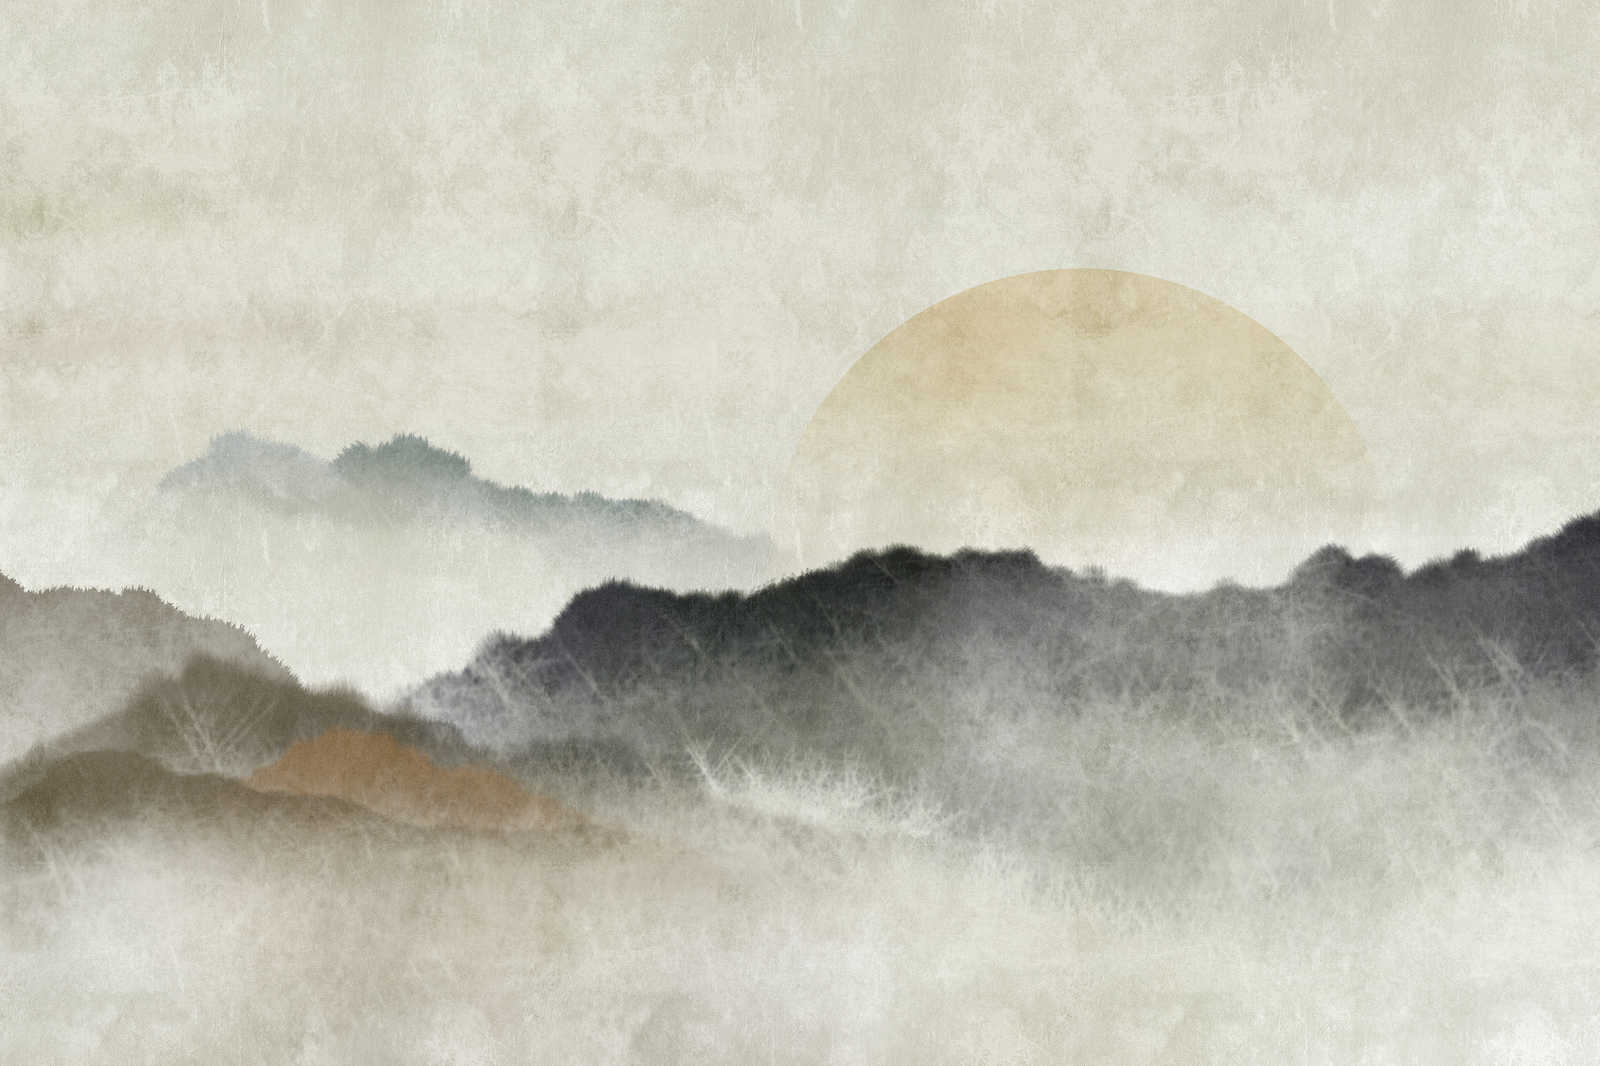             Akaishi 1 - Pintura en lienzo Impresión asiática Cordillera al amanecer - 1,20 m x 0,80 m
        